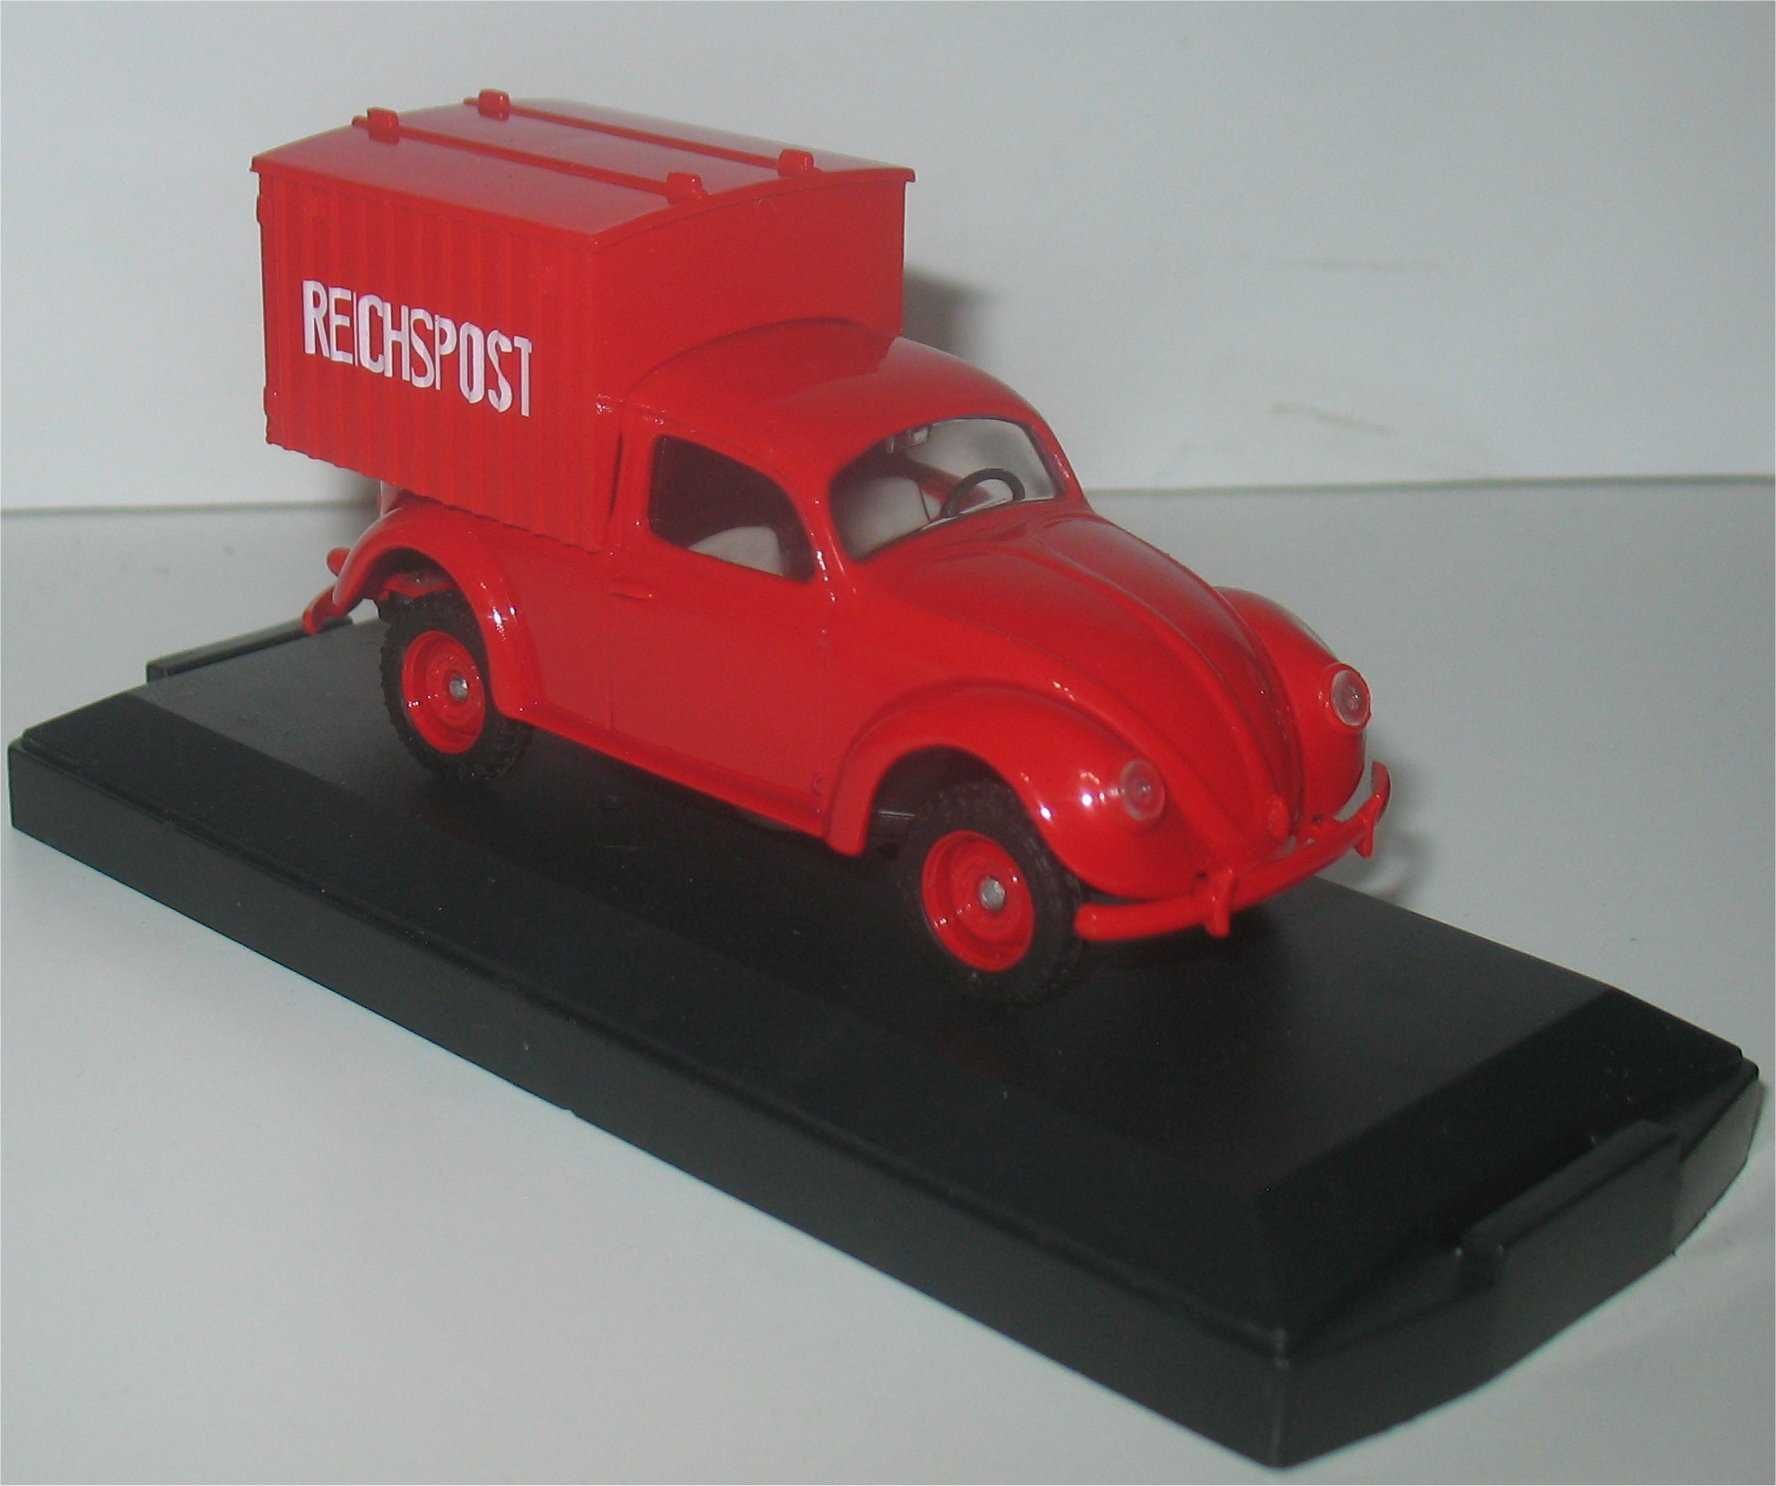 vitesse - Volkswagen Carocha - Reichspost